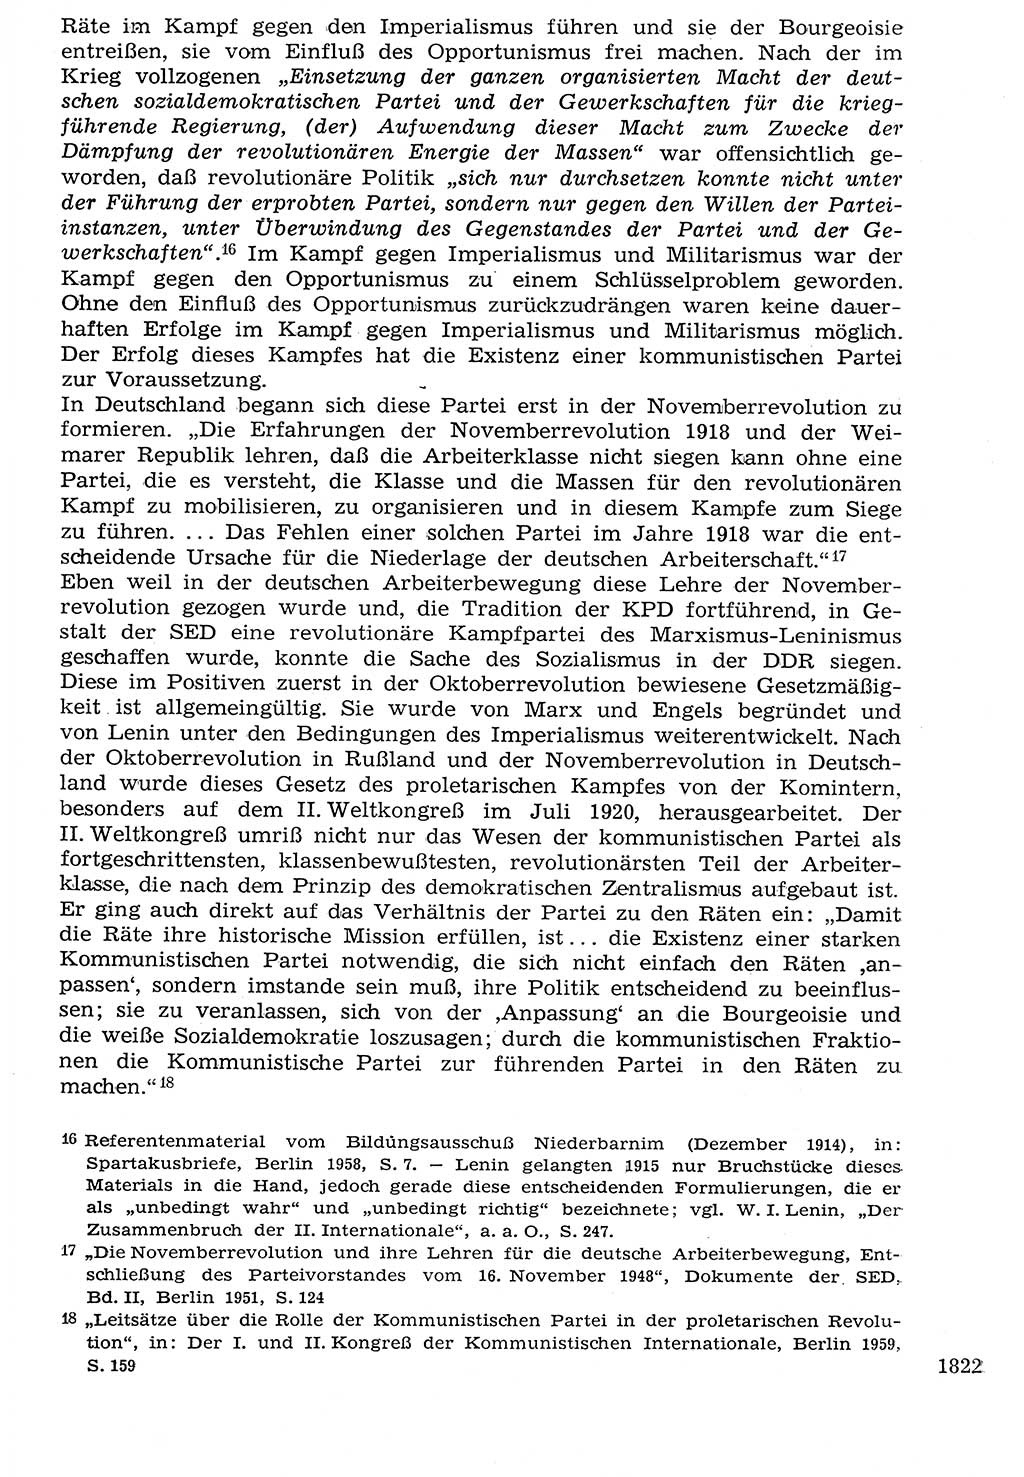 Staat und Recht (StuR), 17. Jahrgang [Deutsche Demokratische Republik (DDR)] 1968, Seite 1822 (StuR DDR 1968, S. 1822)